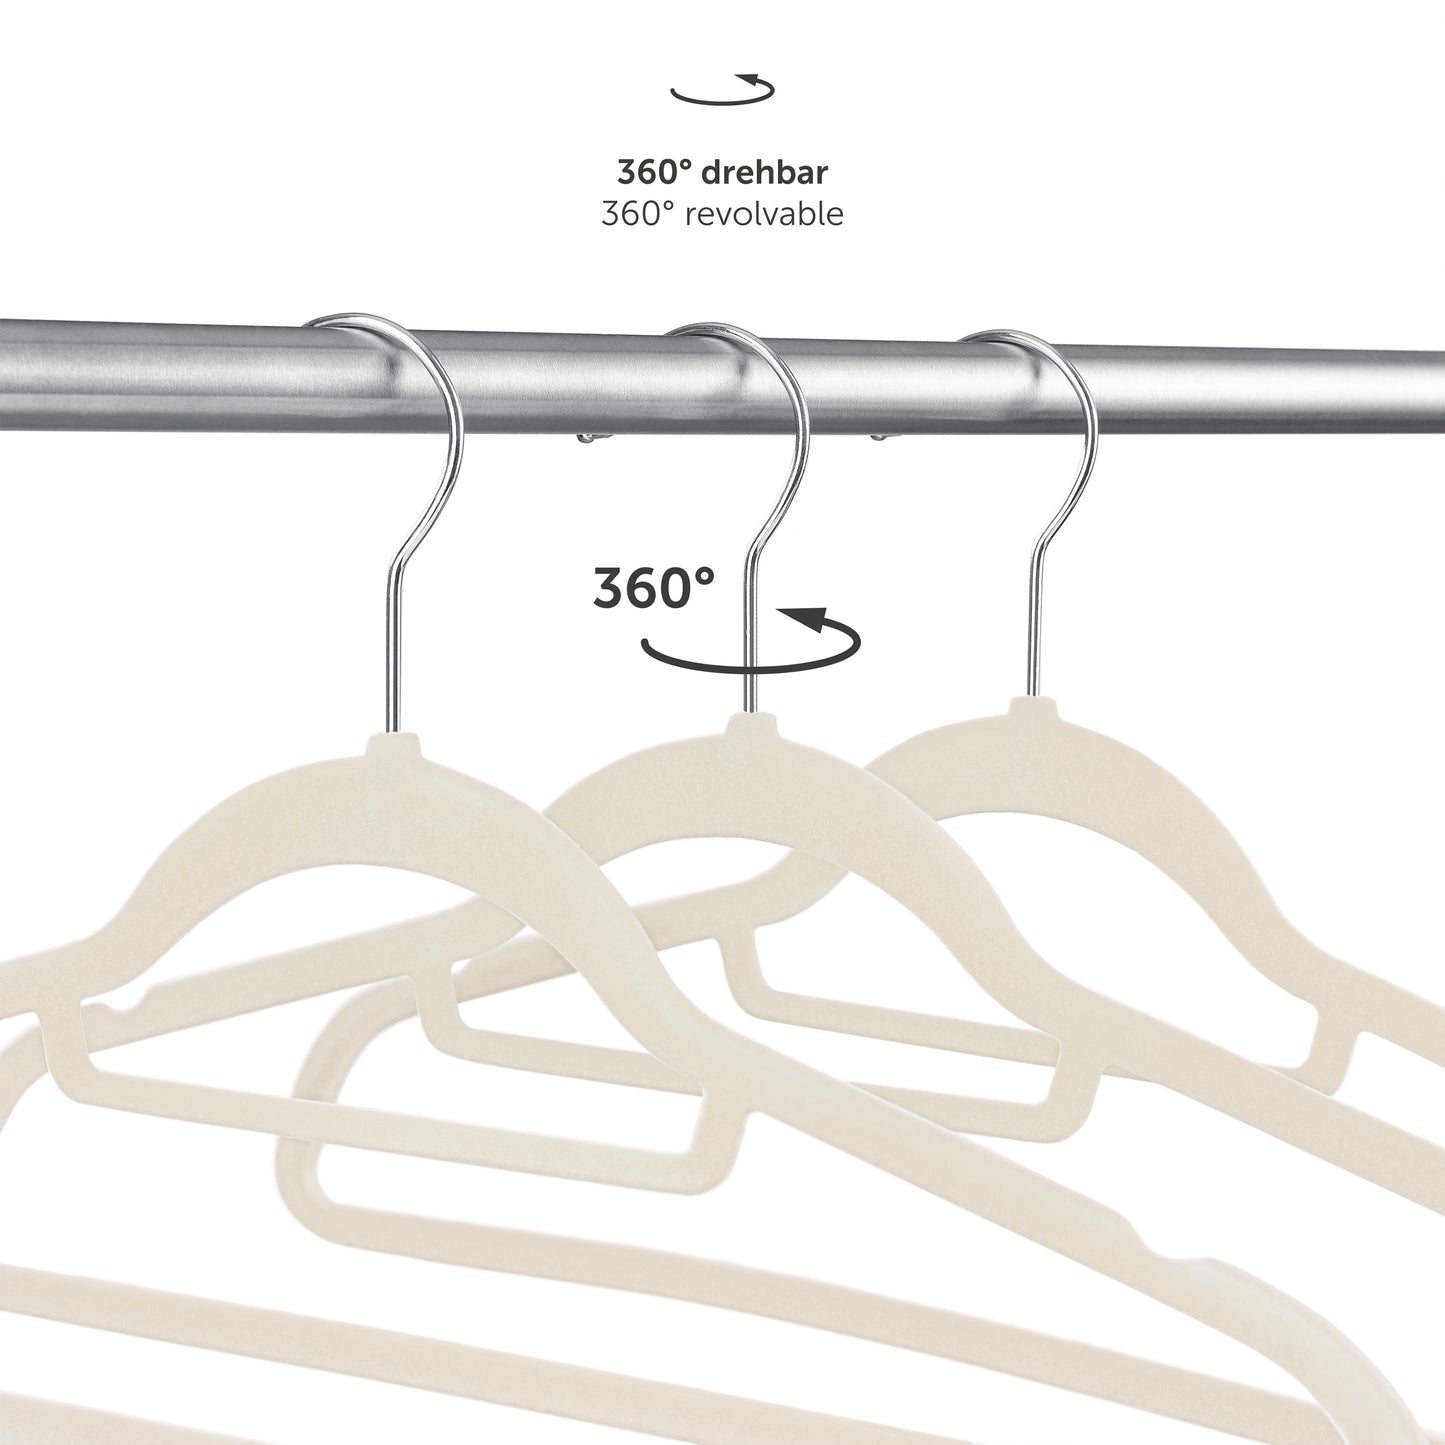 360° drehbare Kleiderbügel die Flexibilität bei der Ausrichtung der Kleidung im Schrank ermöglichen.